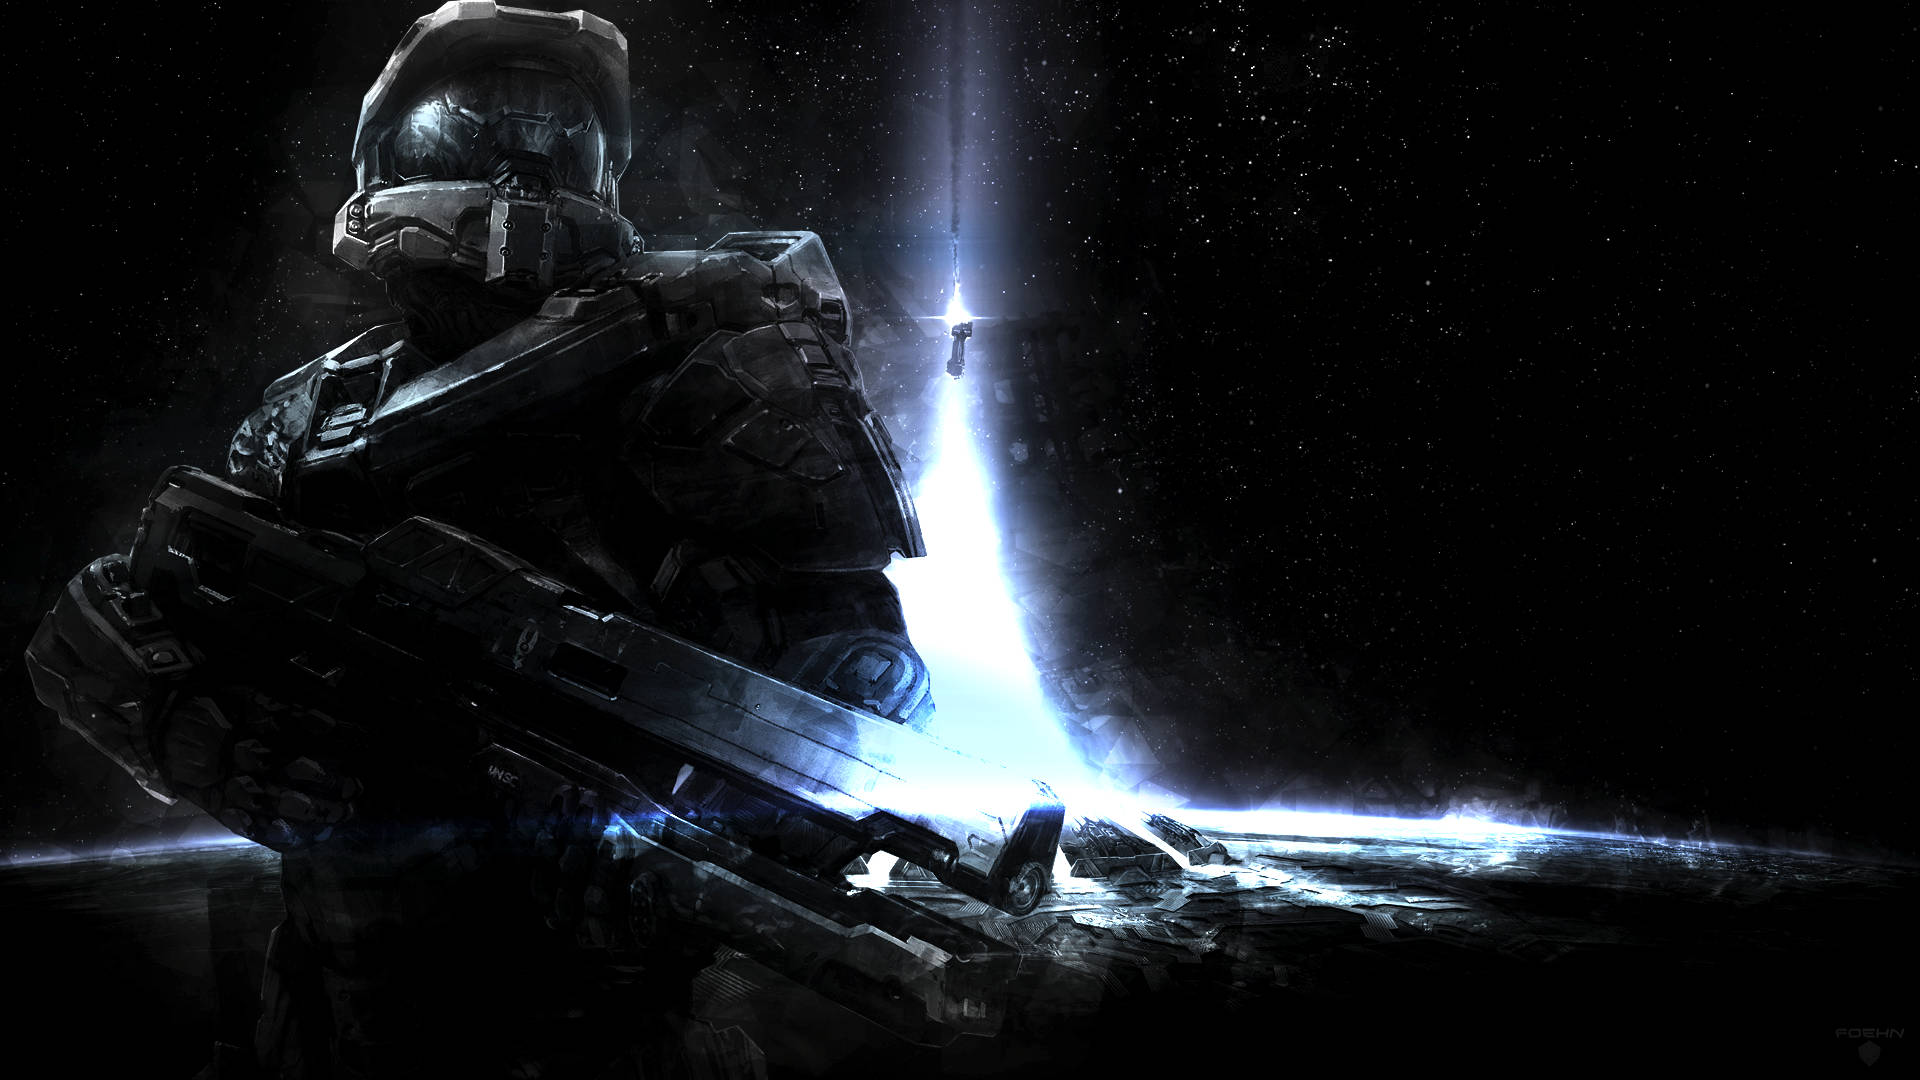 Halo 4 Interstellar Spartan Warrior Background